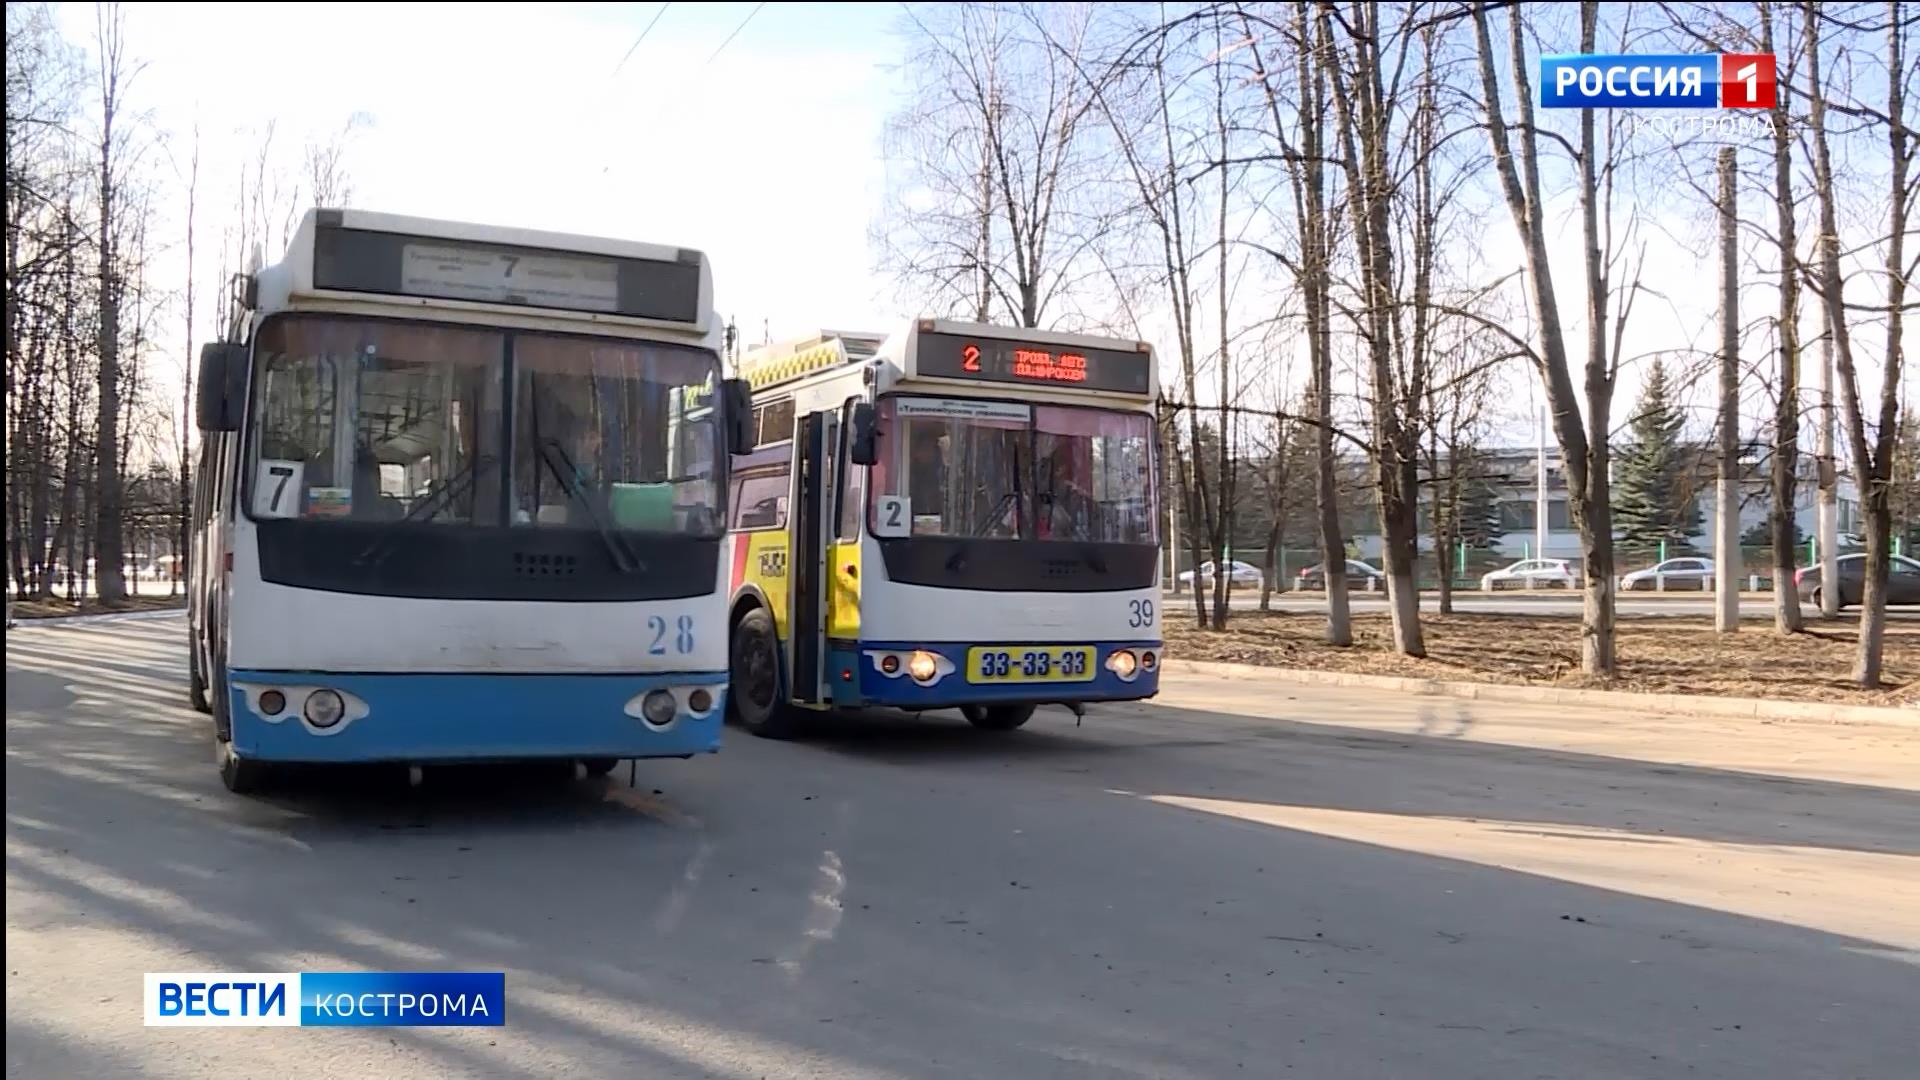 Костромским водителям общественного транспорта полагается досрочная пенсия